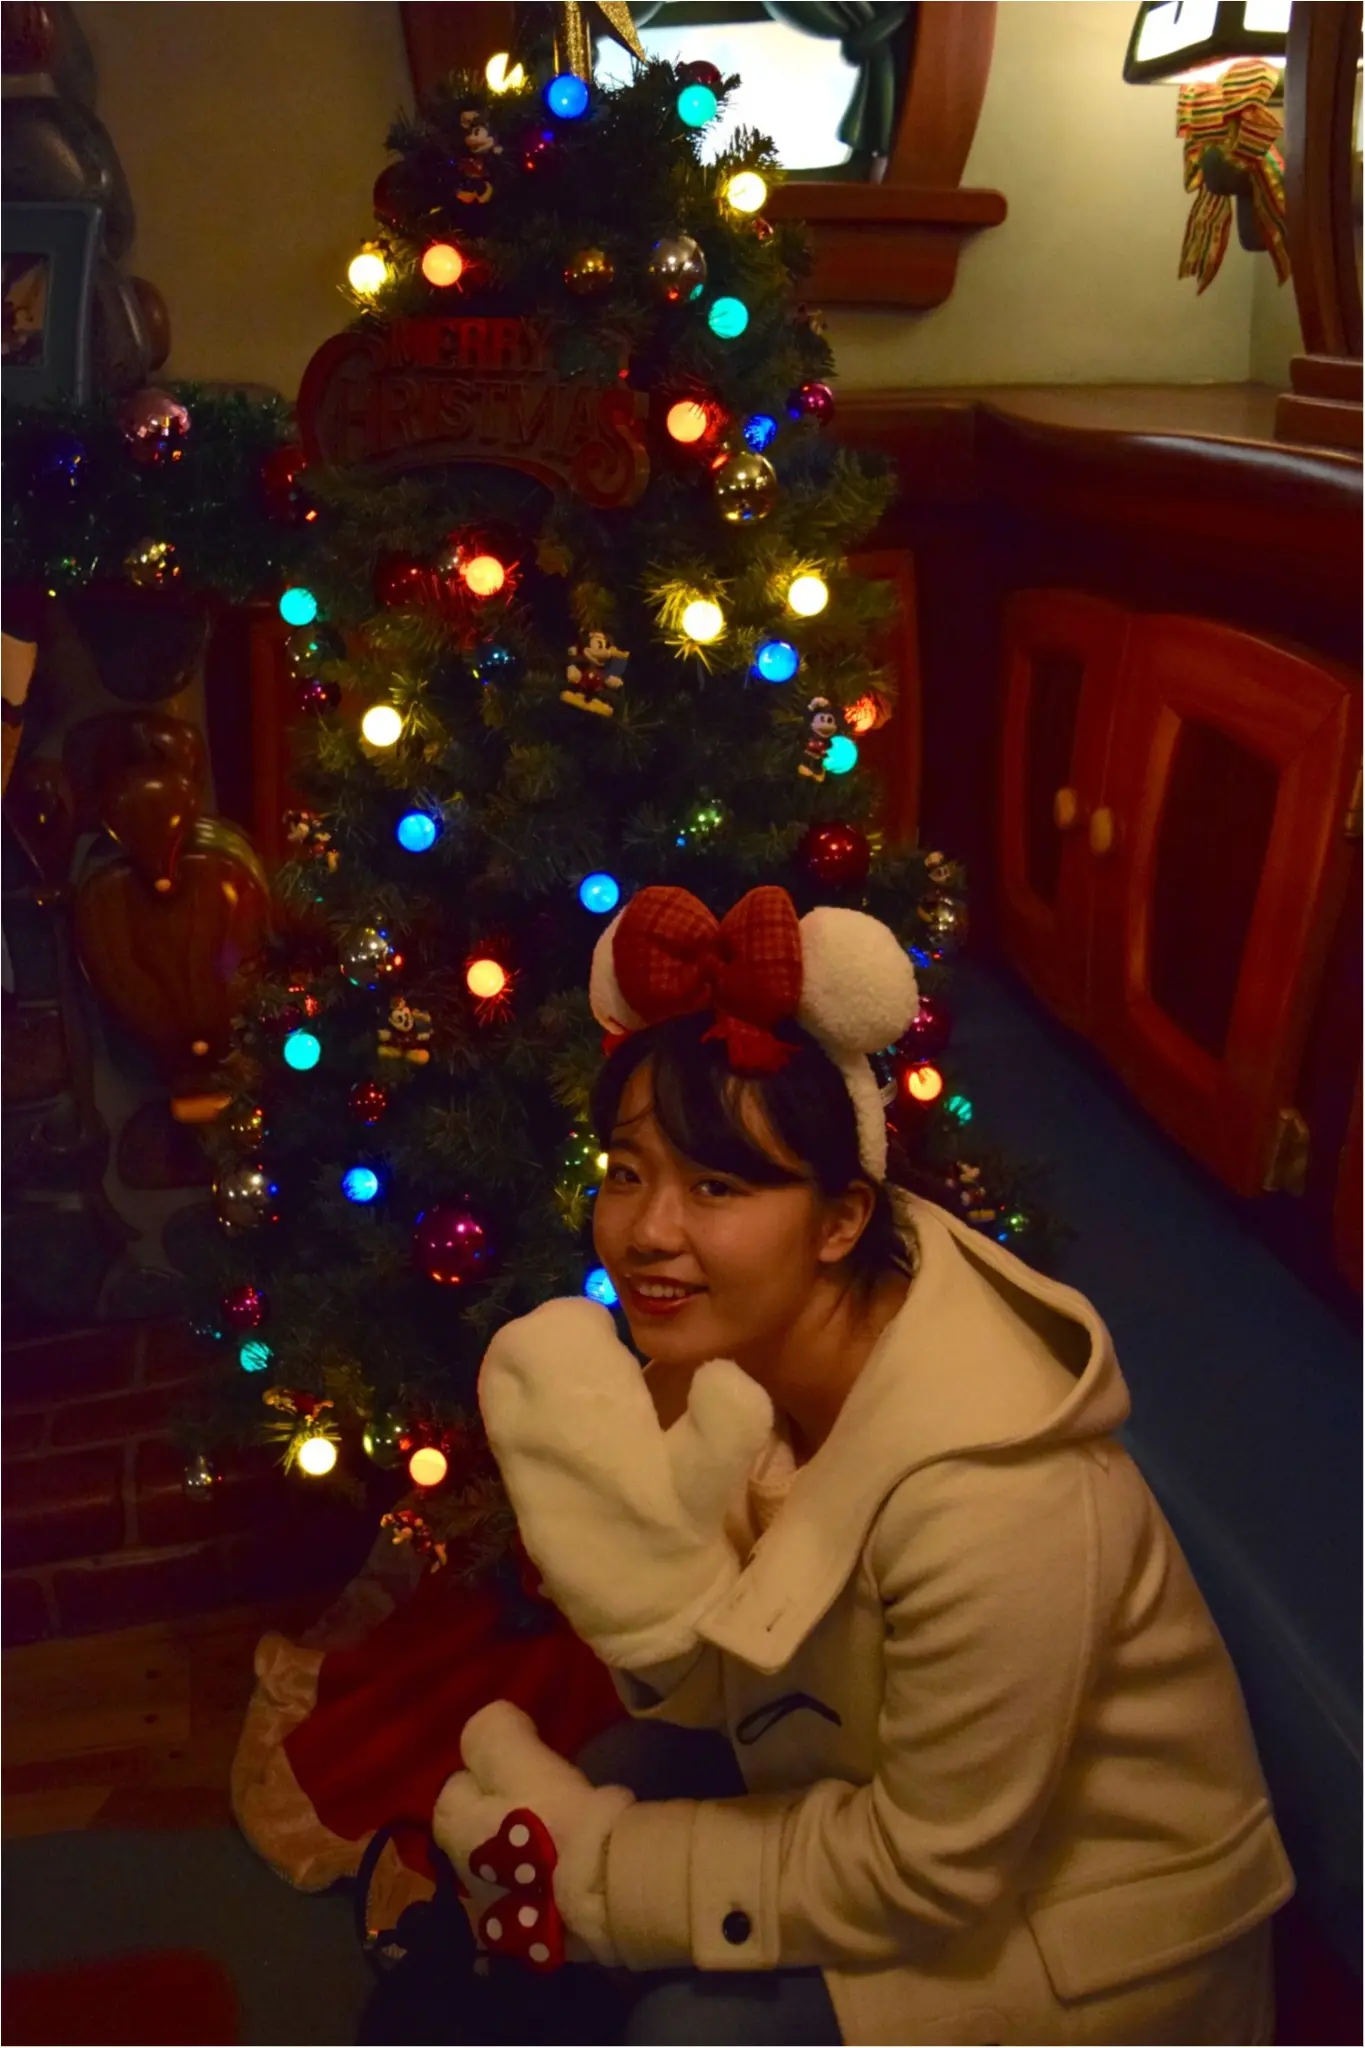 ディズニー 今年のディズニークリスマスはとことん 白コーデ がかわいい理由 3選 クリスマス ファンタジー 東京ディズニーランドの見どころとフォトスポットをご紹介 Moreインフルエンサーズブログ Daily More